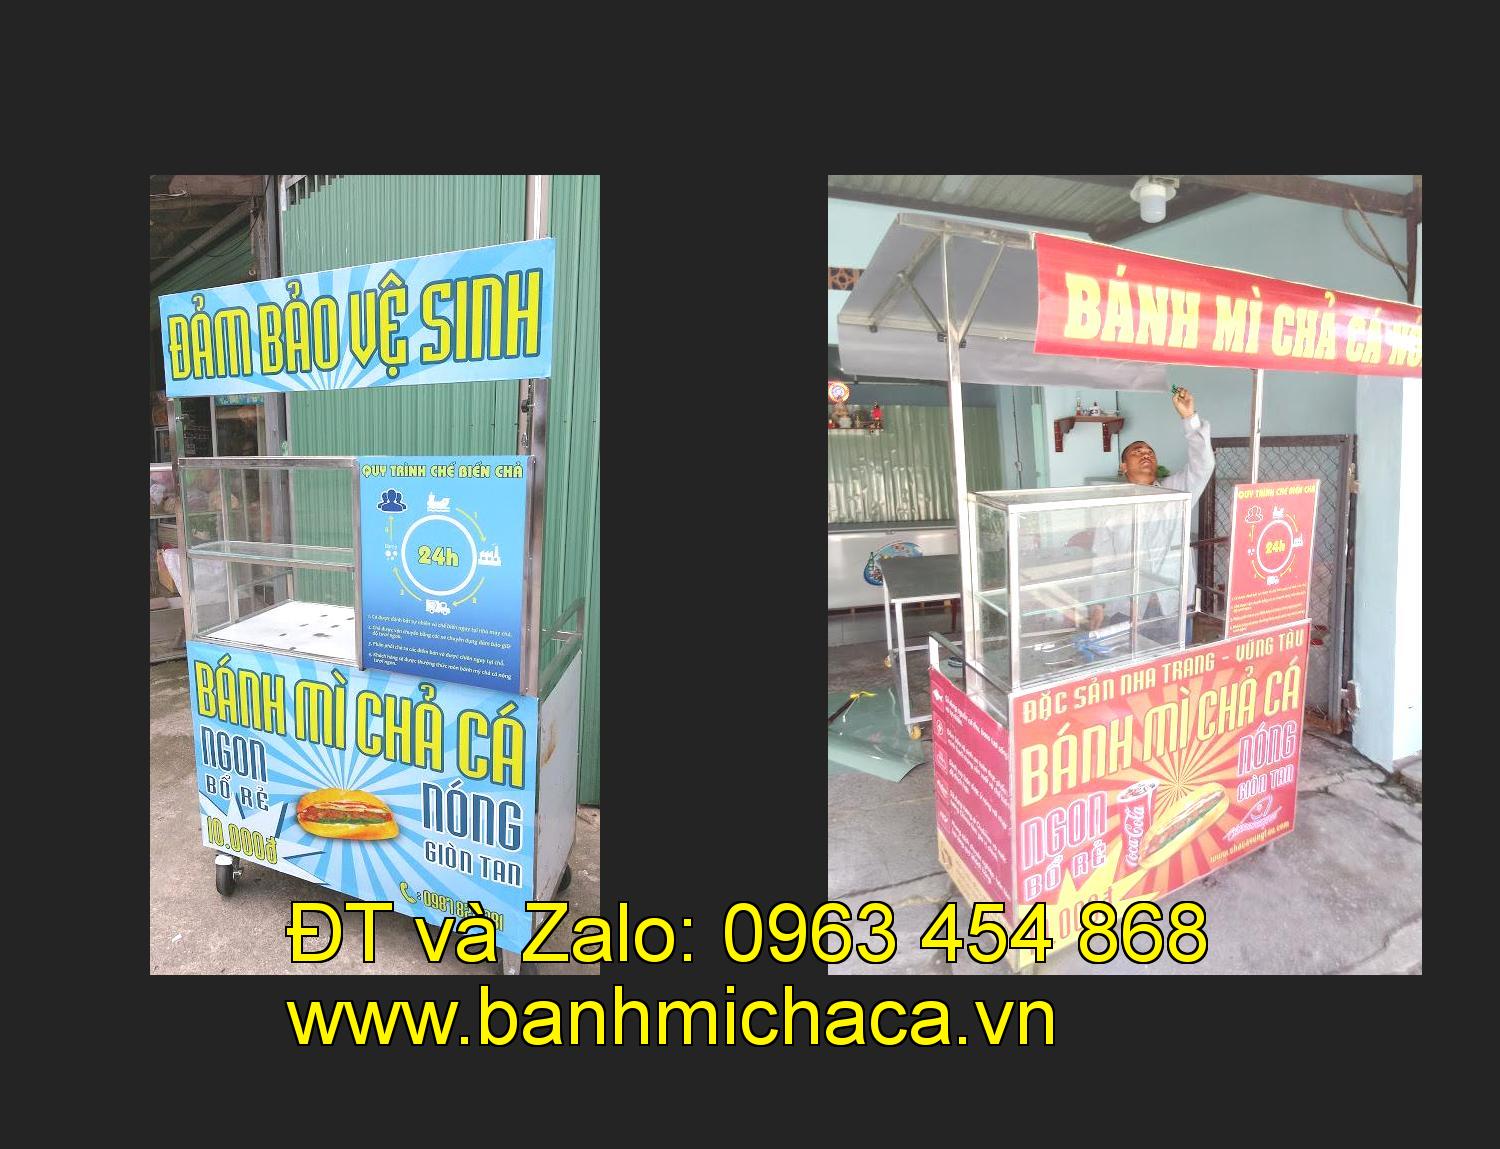 xe bánh mì chả cá giá rẻ tại tỉnh Hà Tĩnh